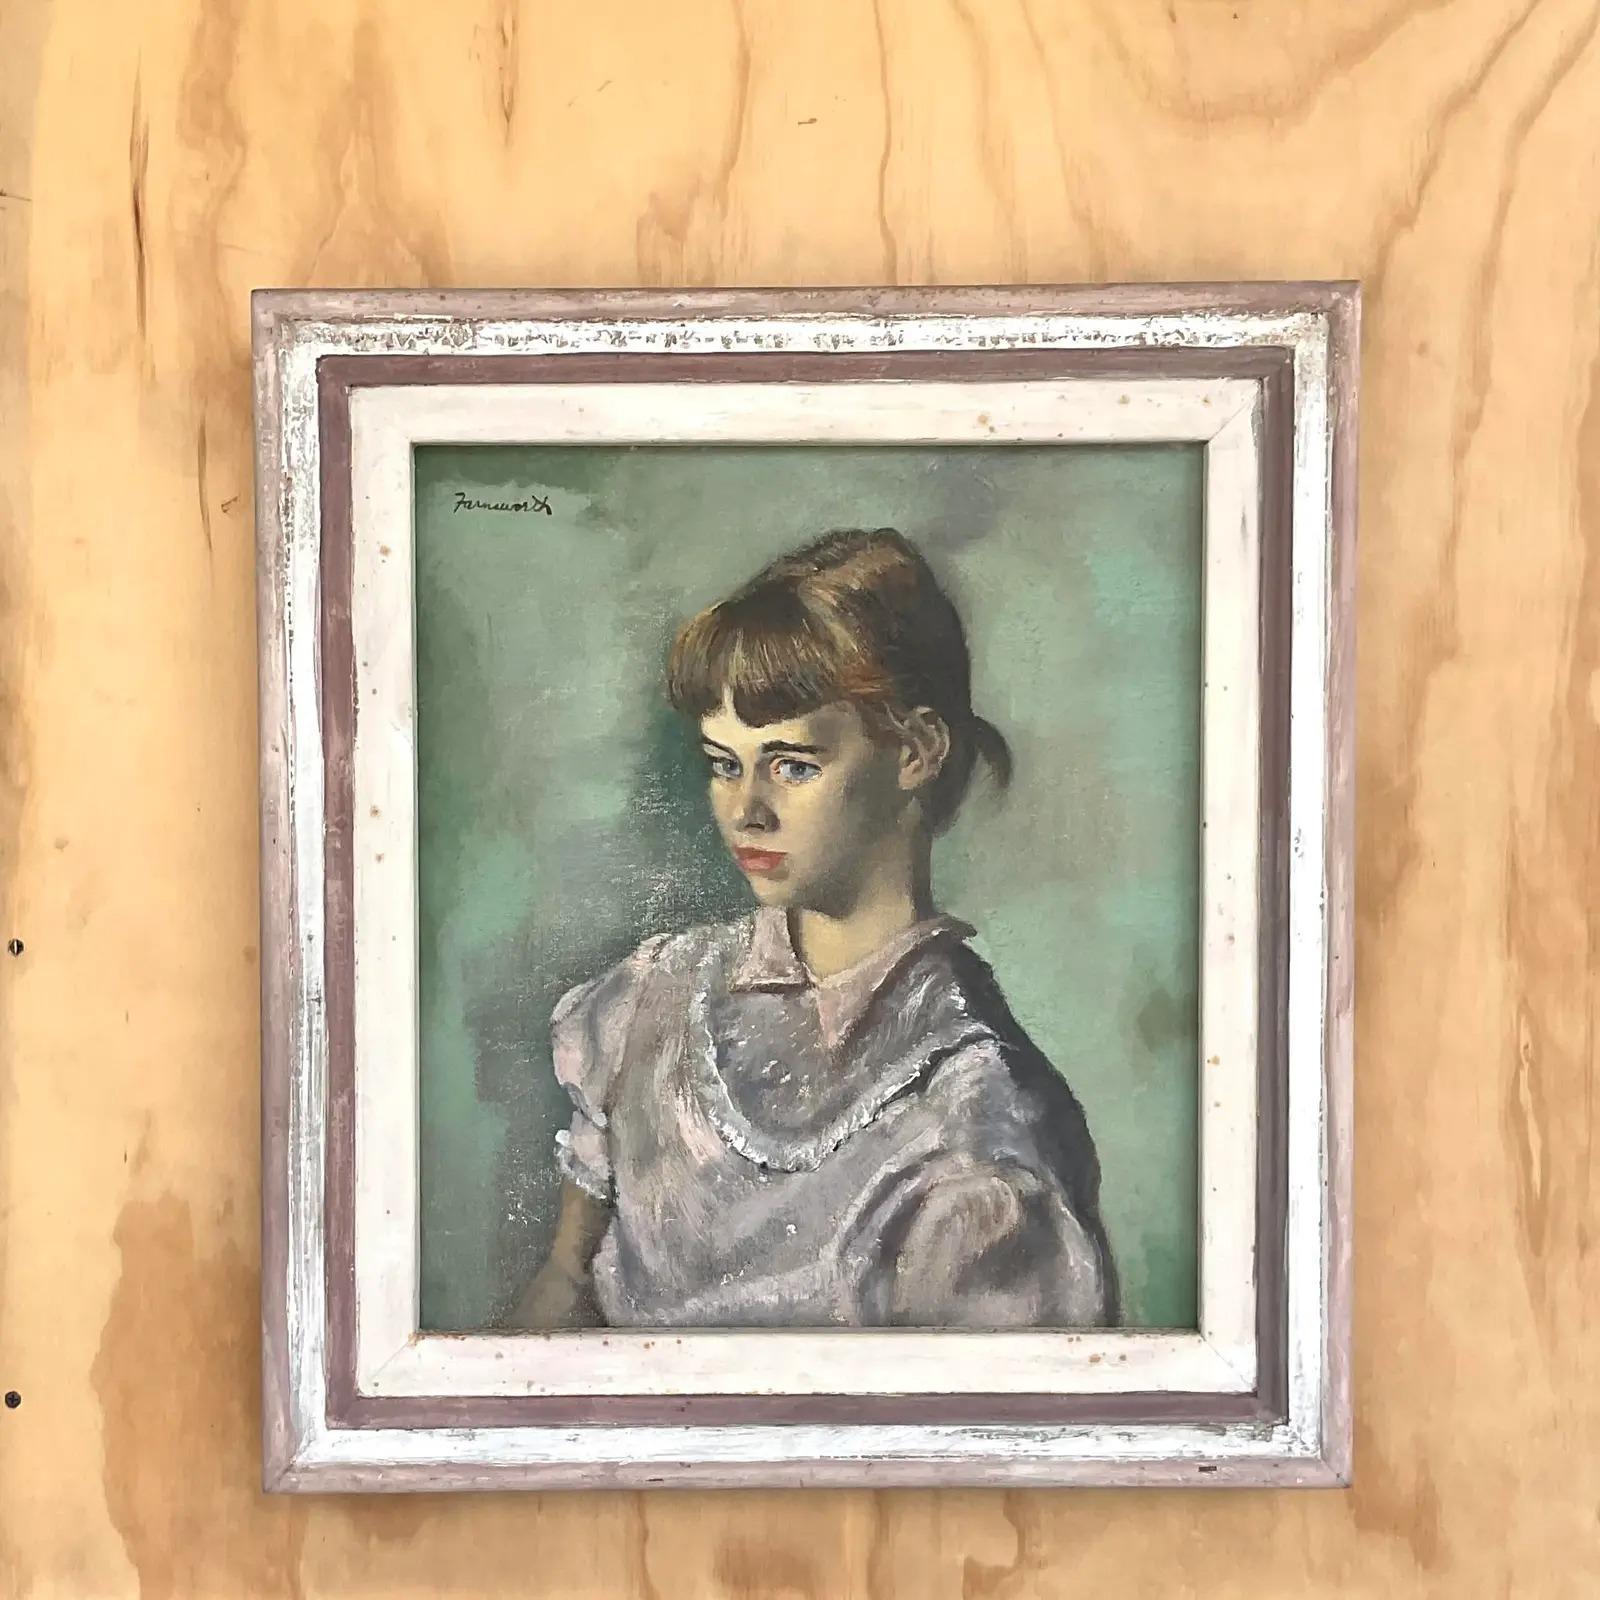 Wunderschönes Original-Ölporträt im Vintage-Stil. Eine schöne Komposition eines jungen Mädchens. Signiert vom Künstler Farnsworth. Erworben aus einem Nachlass in Florida.